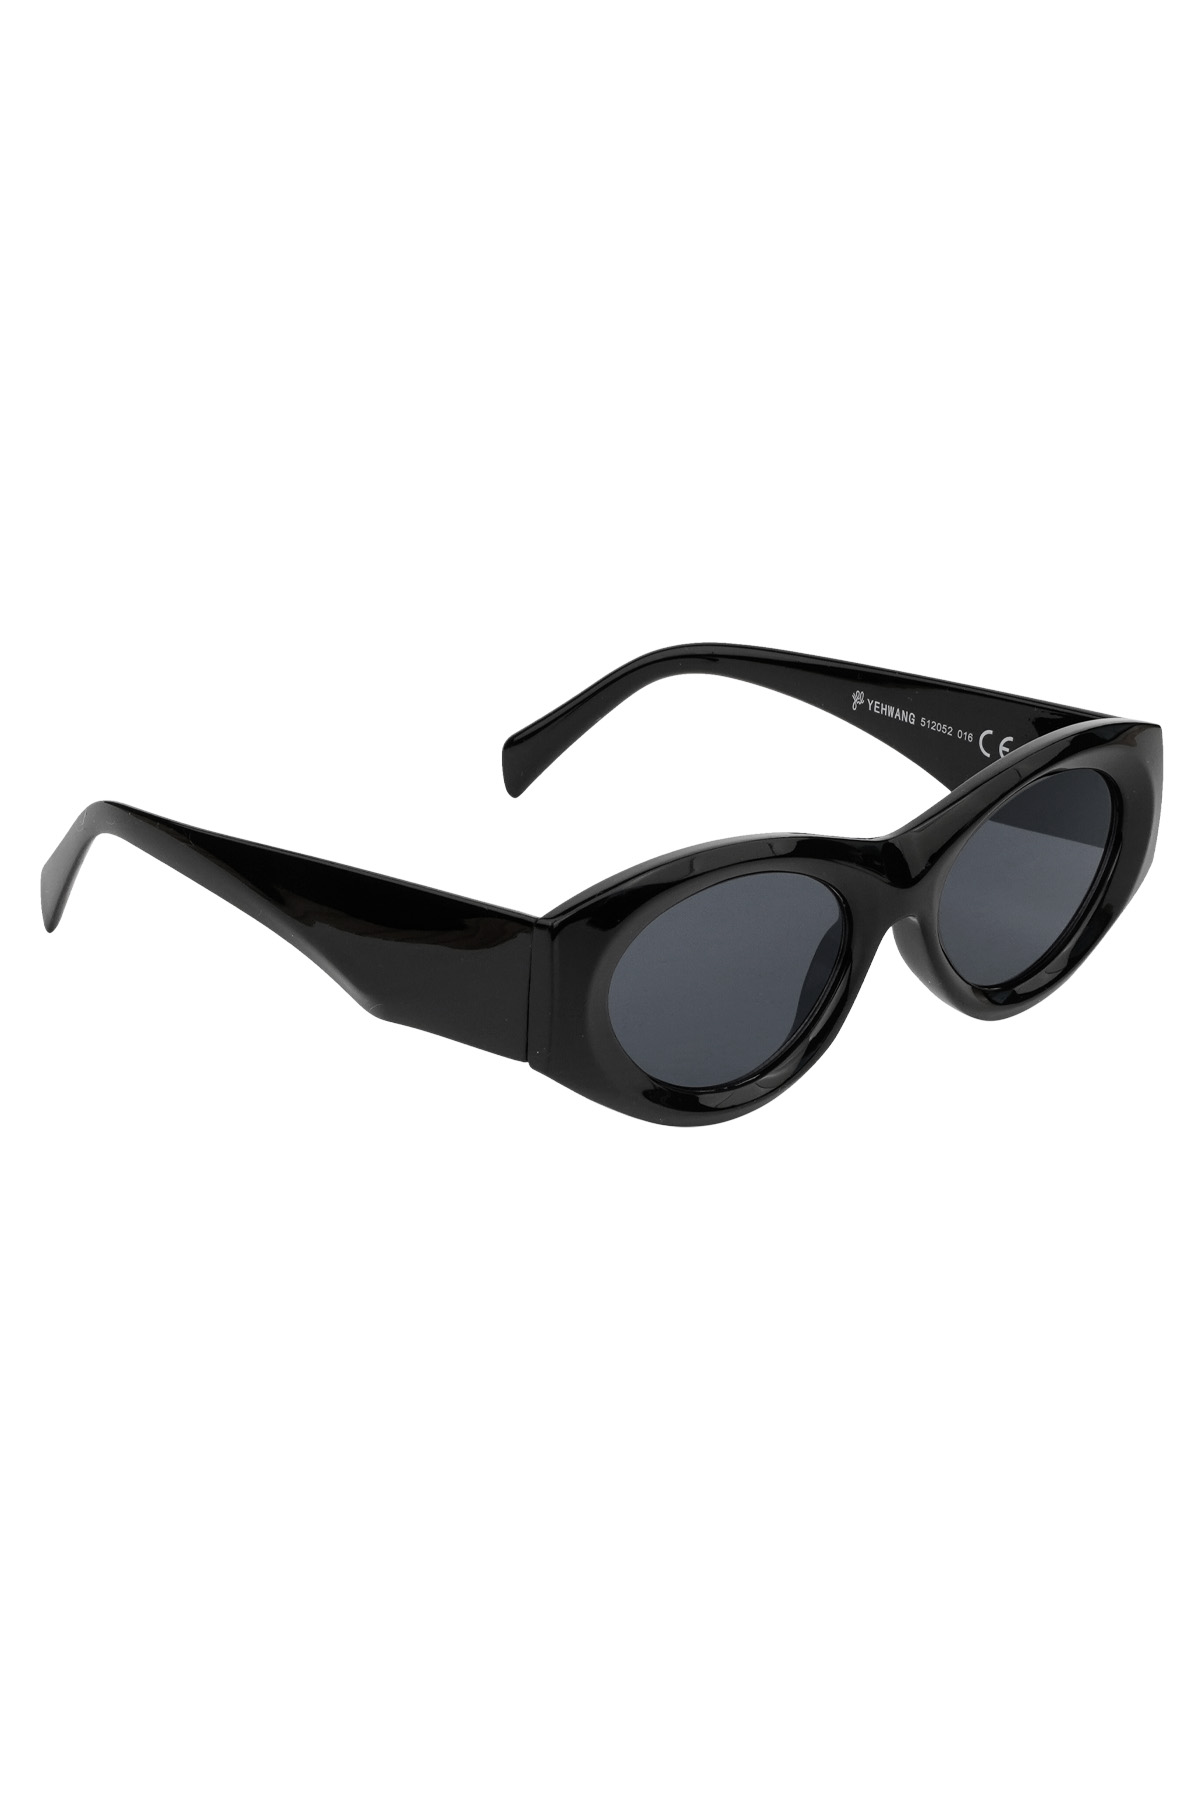 Retro-Look wie eine Sonnenbrille – schwarz